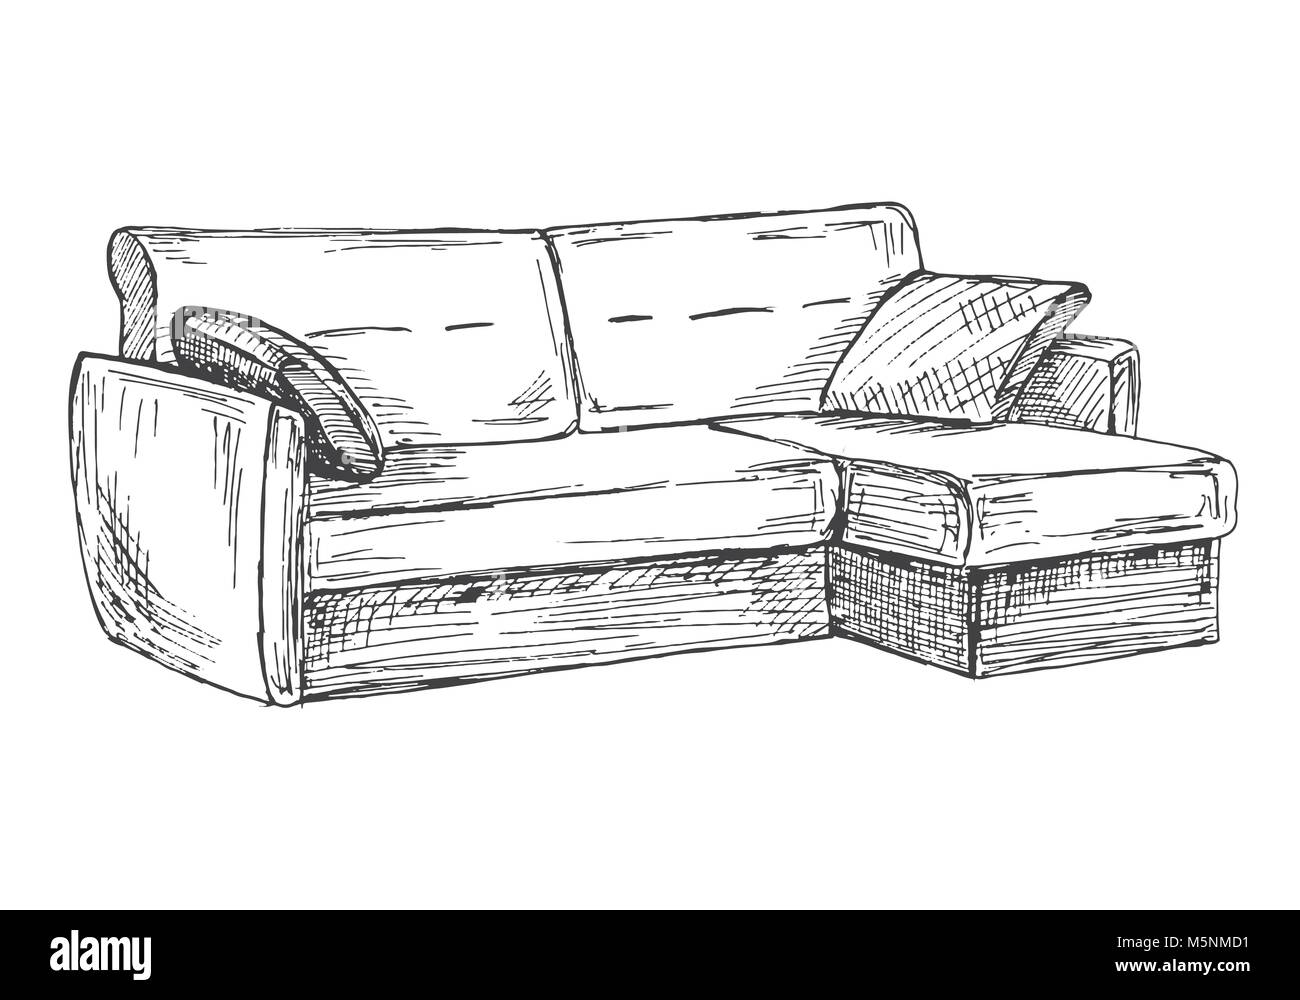 Sofa isoliert auf weißem Hintergrund. Vector Illustration in einer Skizze Stil. Stock Vektor